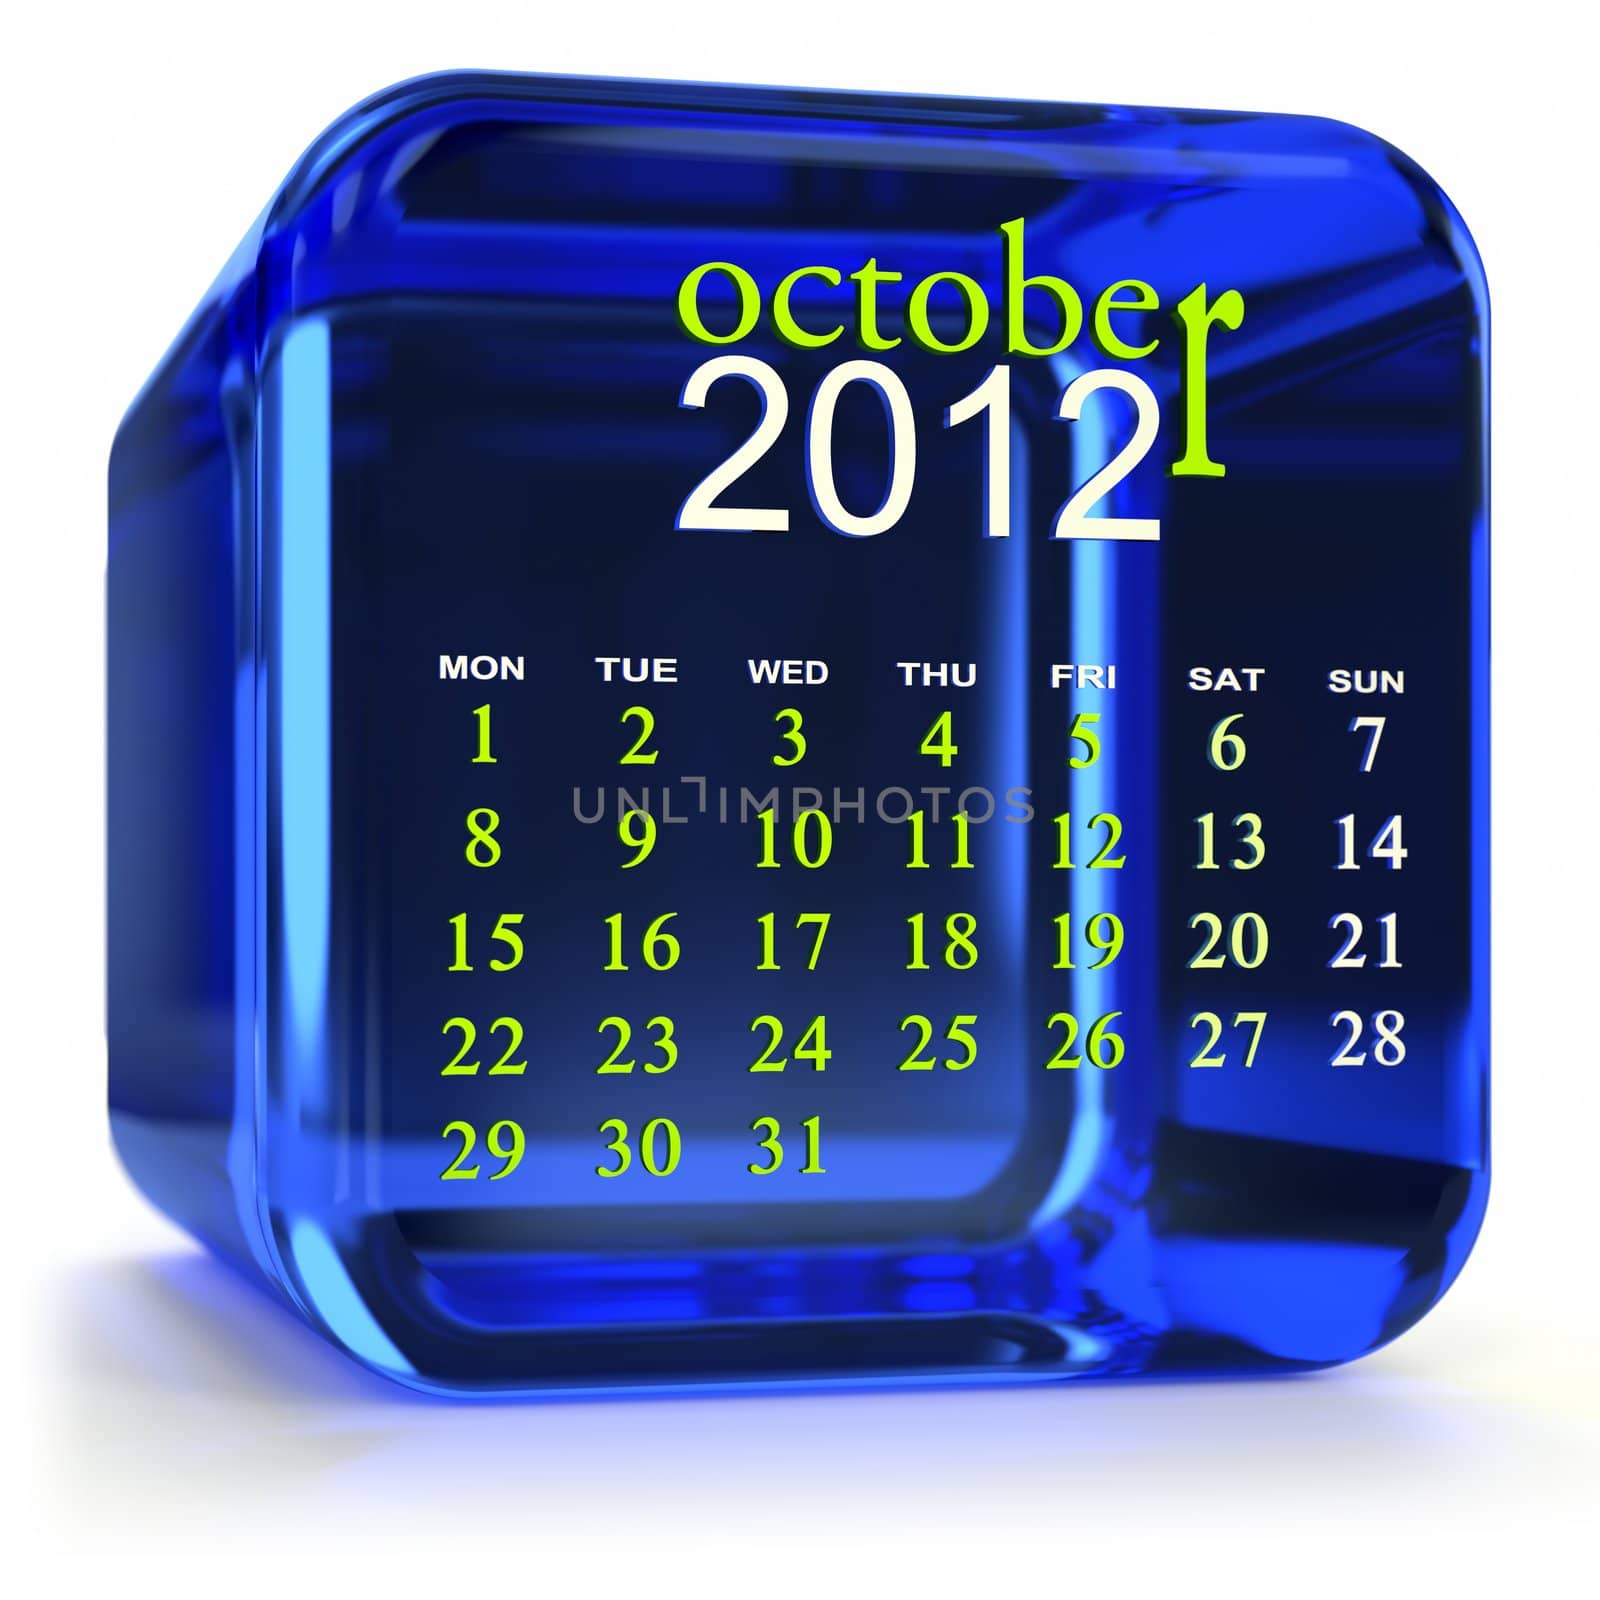 Blue glass calendar. Part of a calendar set.